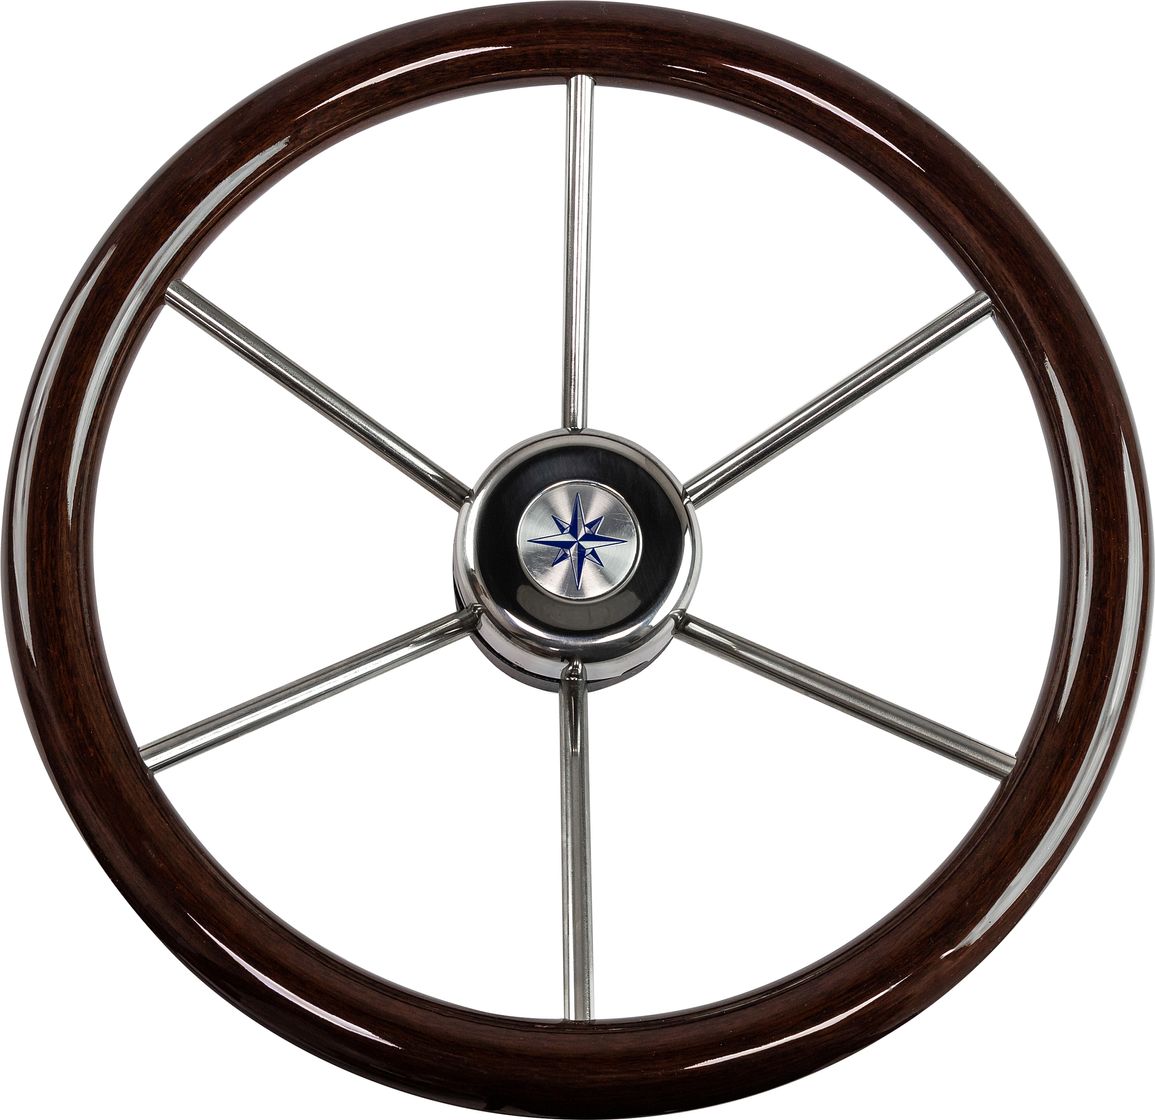 Рулевое колесо LEADER WOOD деревянный обод серебряные спицы д. 390 мм VN7390-33 рулевое колесо leader wood деревянный обод серебряные спицы д 360 мм vn7360 33